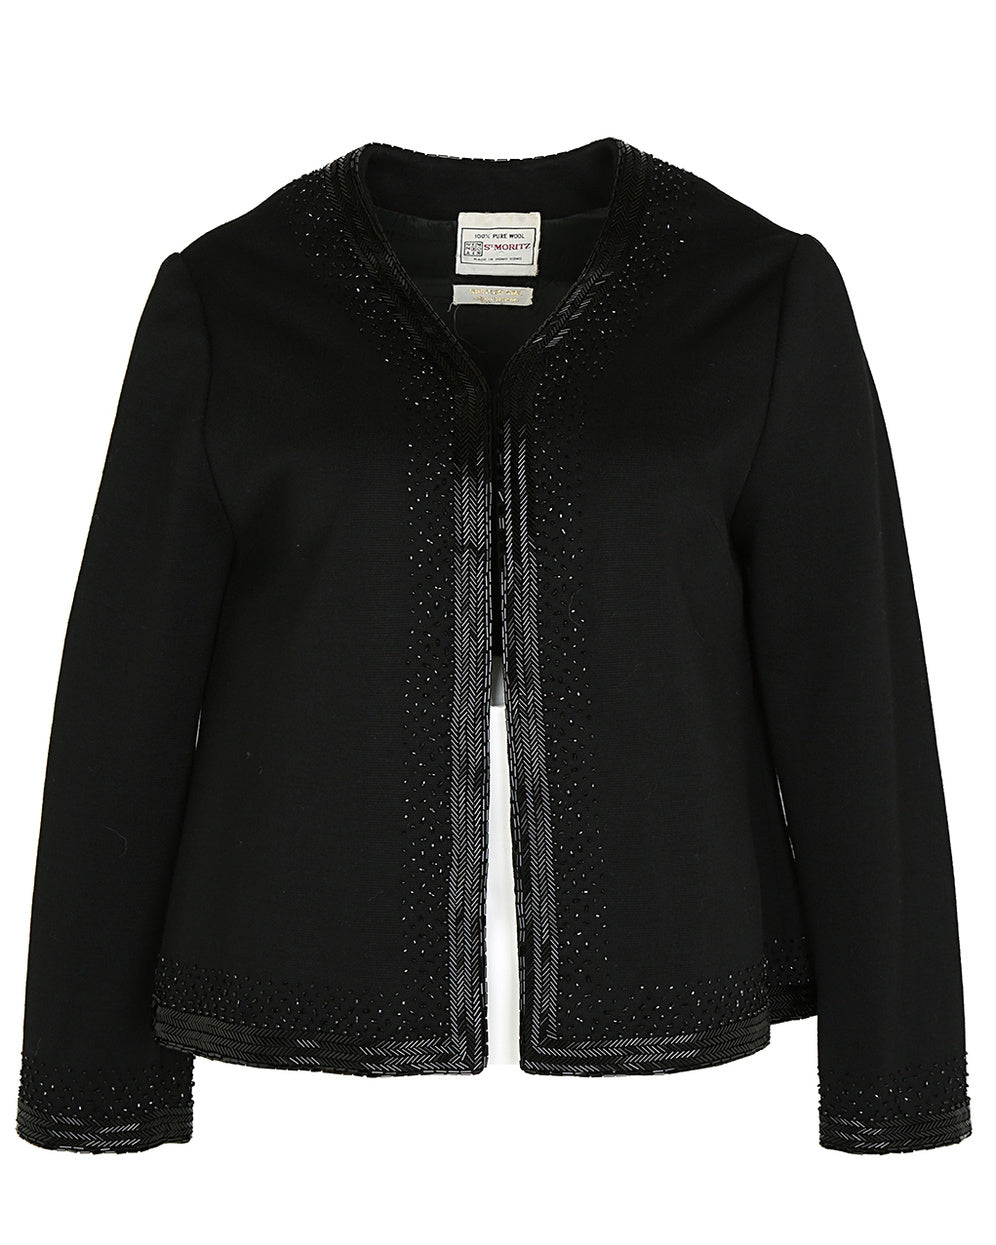 70s Black Embellished Jacket - M